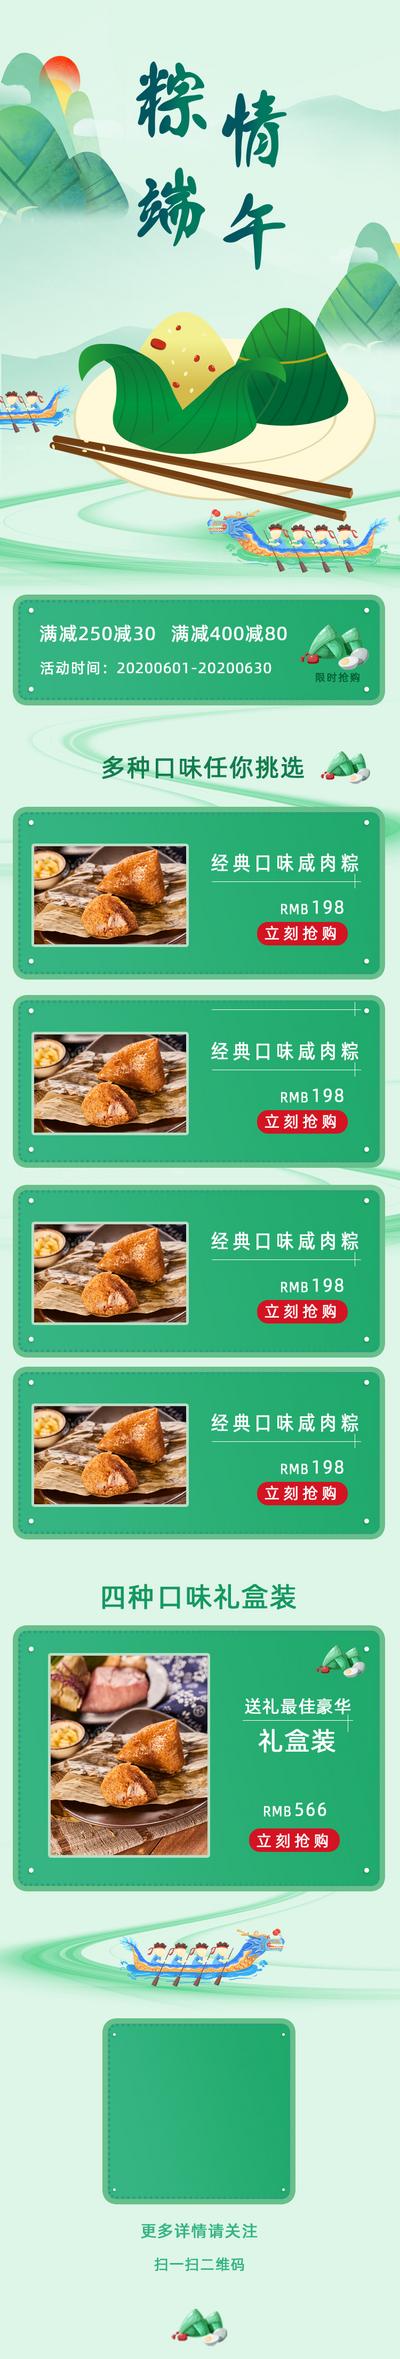 南门网 电商详情页 淘宝详情页 中国传统节日 端午节 粽子 产品信息 口味